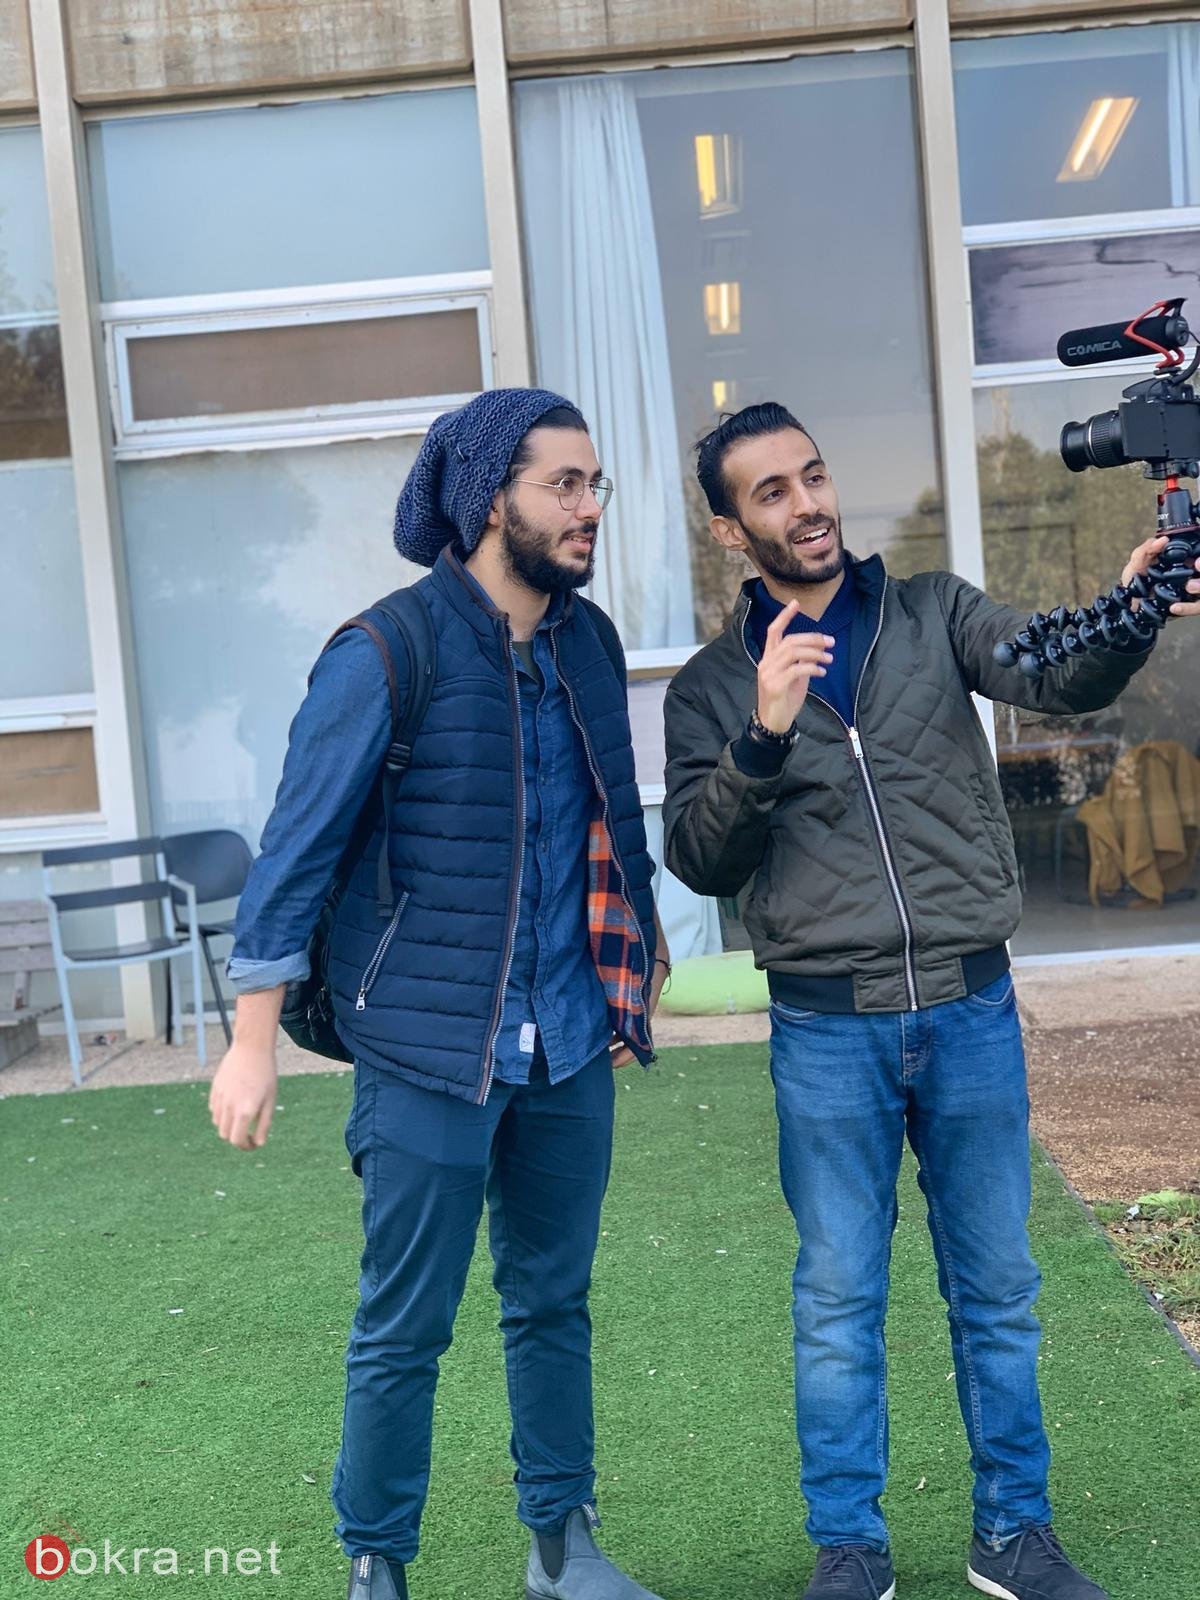 بدء الموسم الثاني من "قاعدين ع بنك"، شاهدوا لقاءنا مع طلاب جامعة حيفا-4